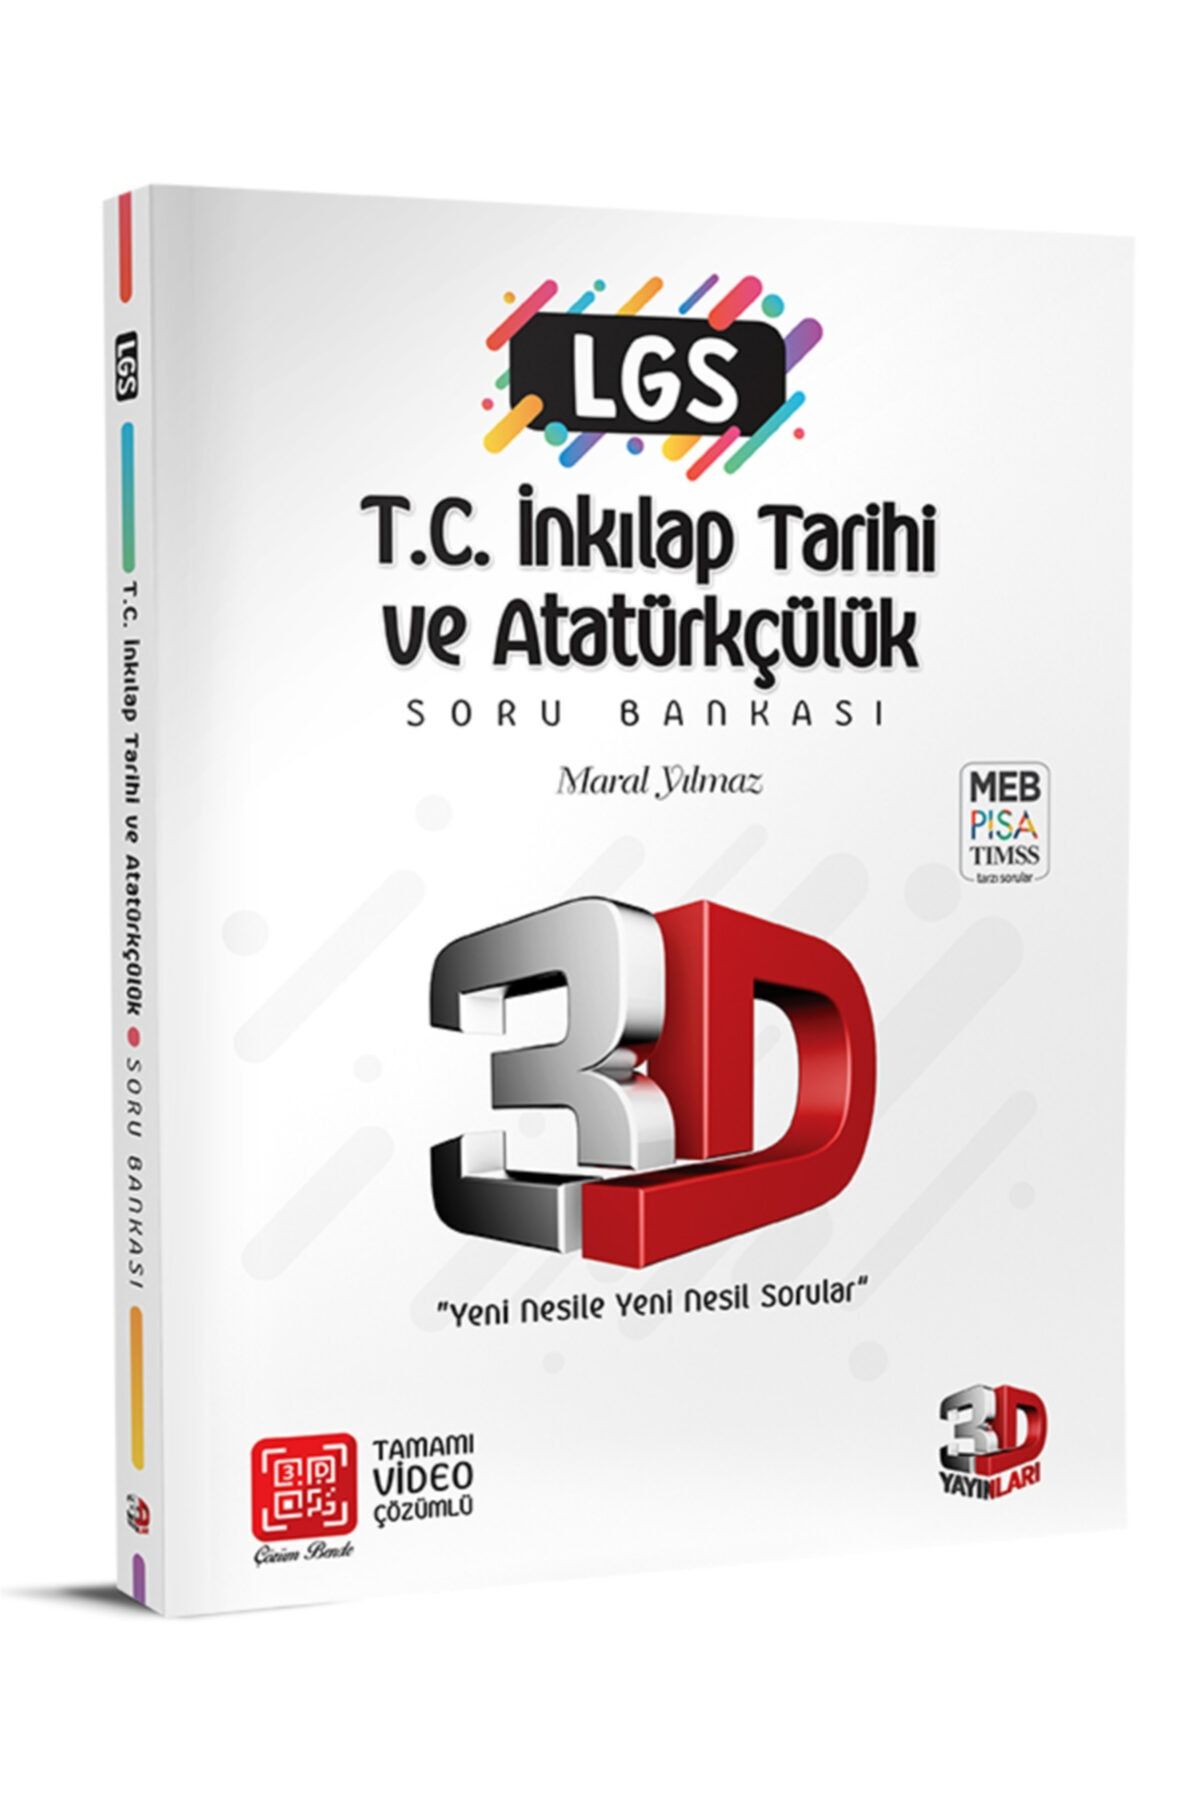 3D Yayınları Lgs 3d Inkılap Tarıhı Soru Bankası